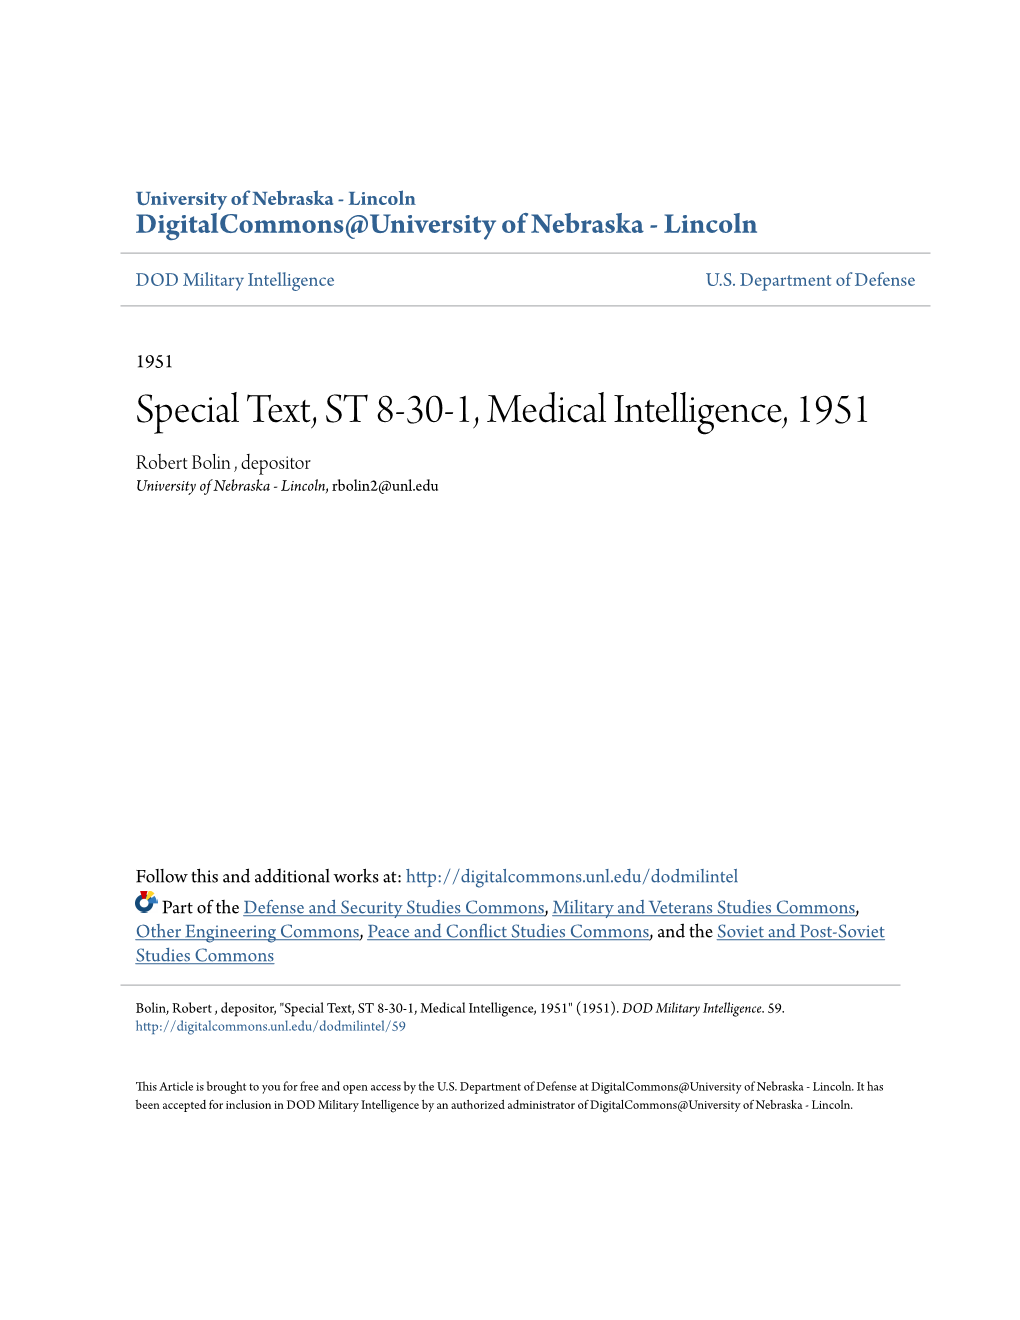 Special Text, ST 8-30-1, Medical Intelligence, 1951 Robert Bolin , Depositor University of Nebraska - Lincoln, Rbolin2@Unl.Edu